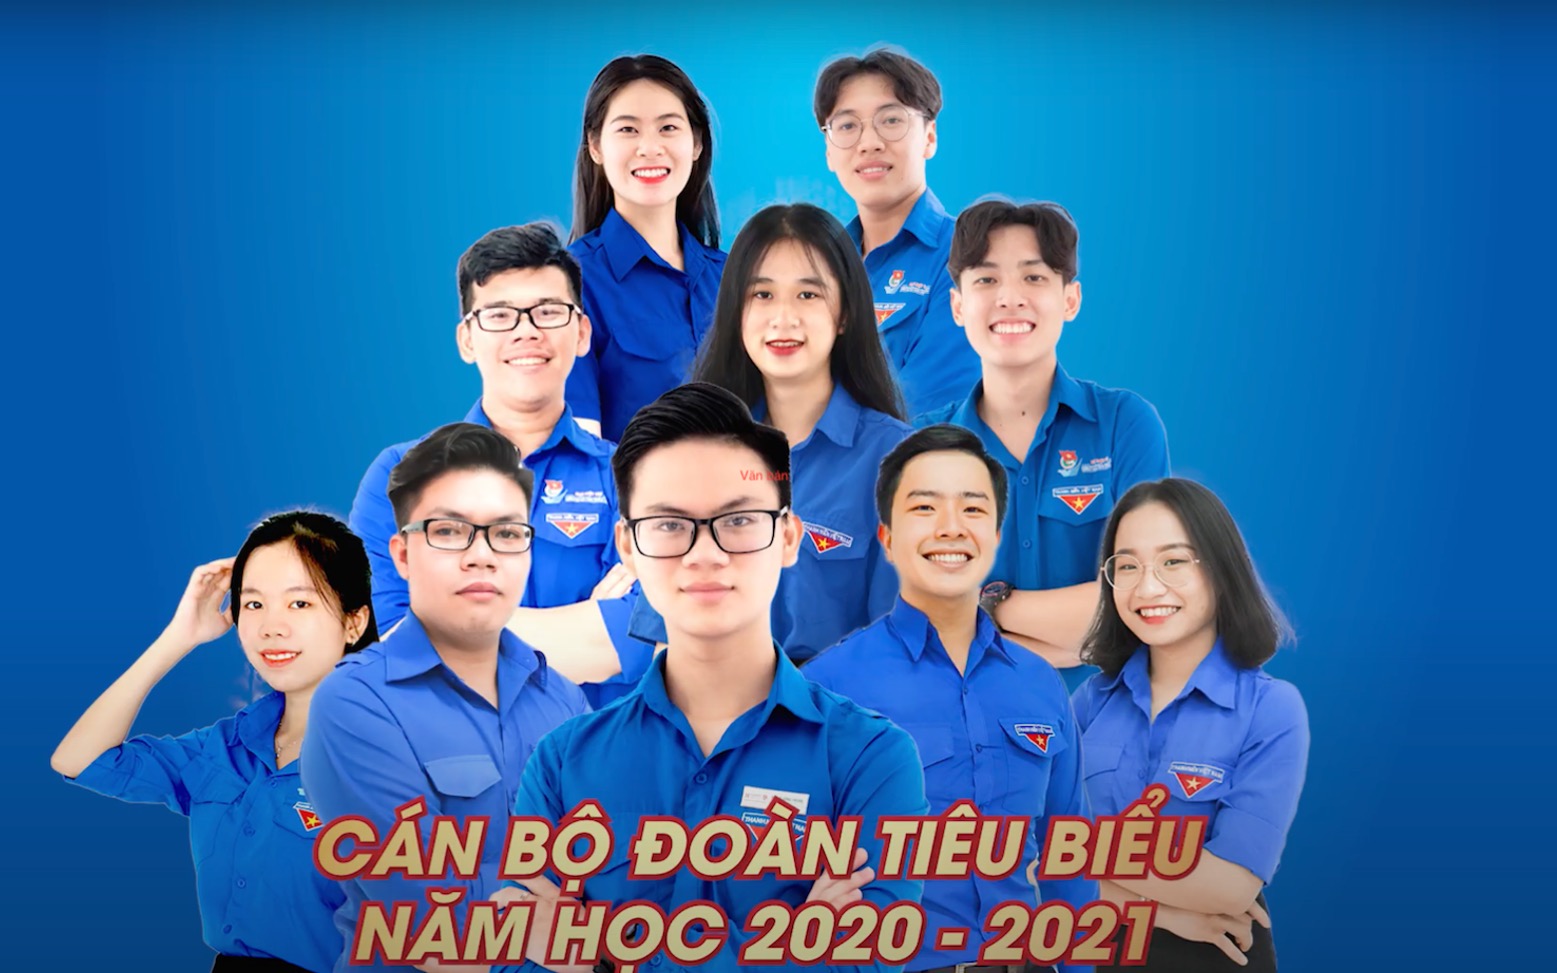 HIU tuyên dương 20 cán bộ Đoàn tiêu biểu, Năm học 2020 – 2021